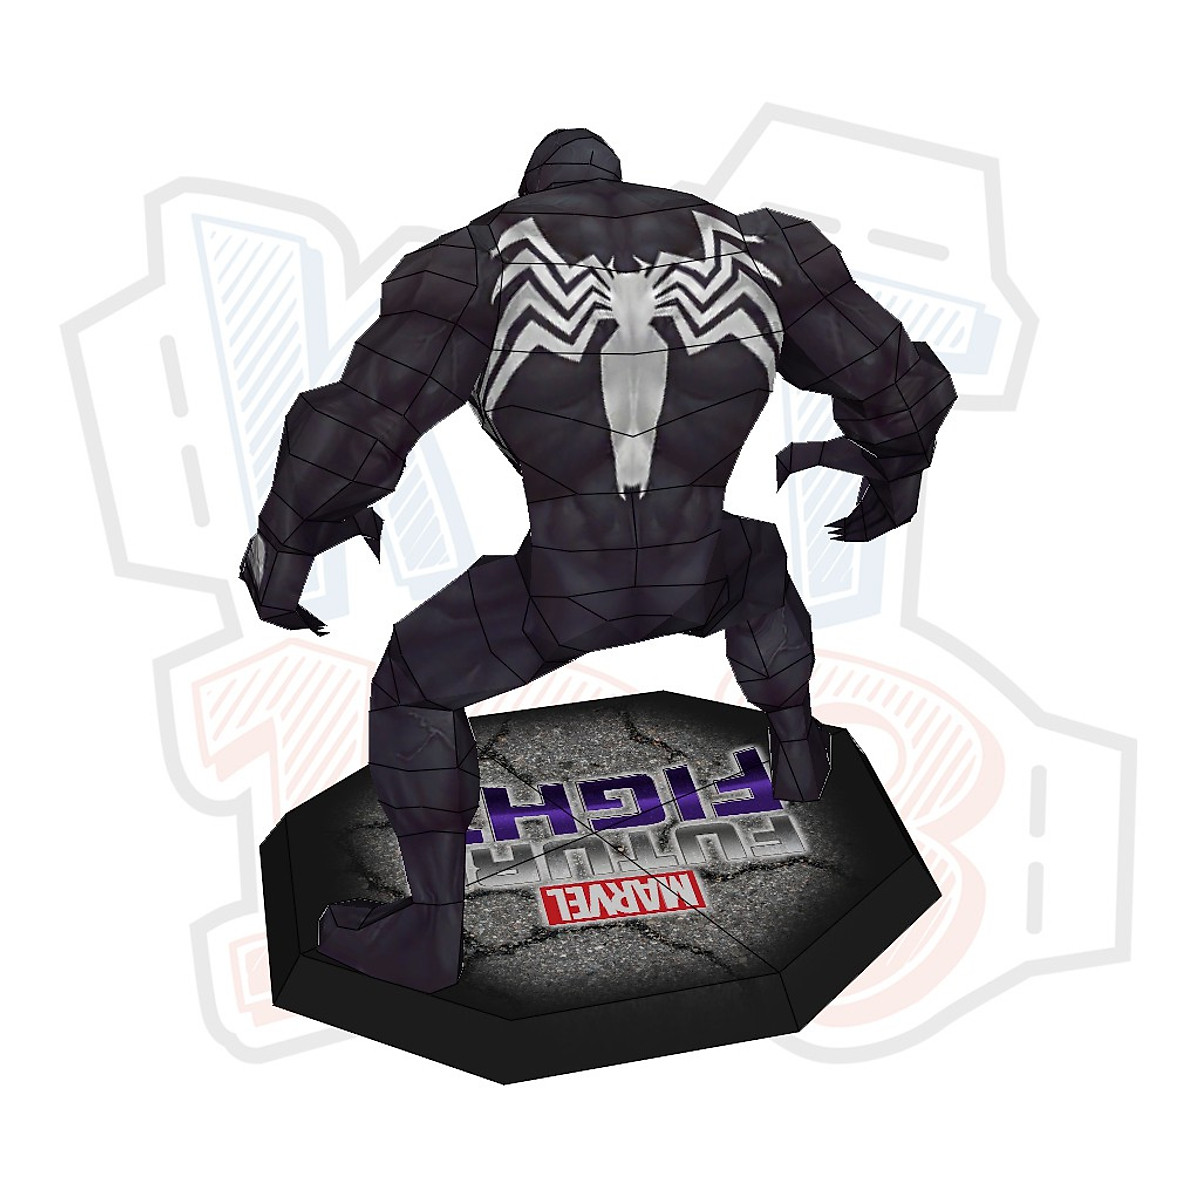 Thinkmax 1 Hộp Mô Hình Venom Hasbro Mô Hình Venom Sưu Tầm Dòng Venom Huyền  Thoại Marvel Đồ Chơi Venom  MixASale